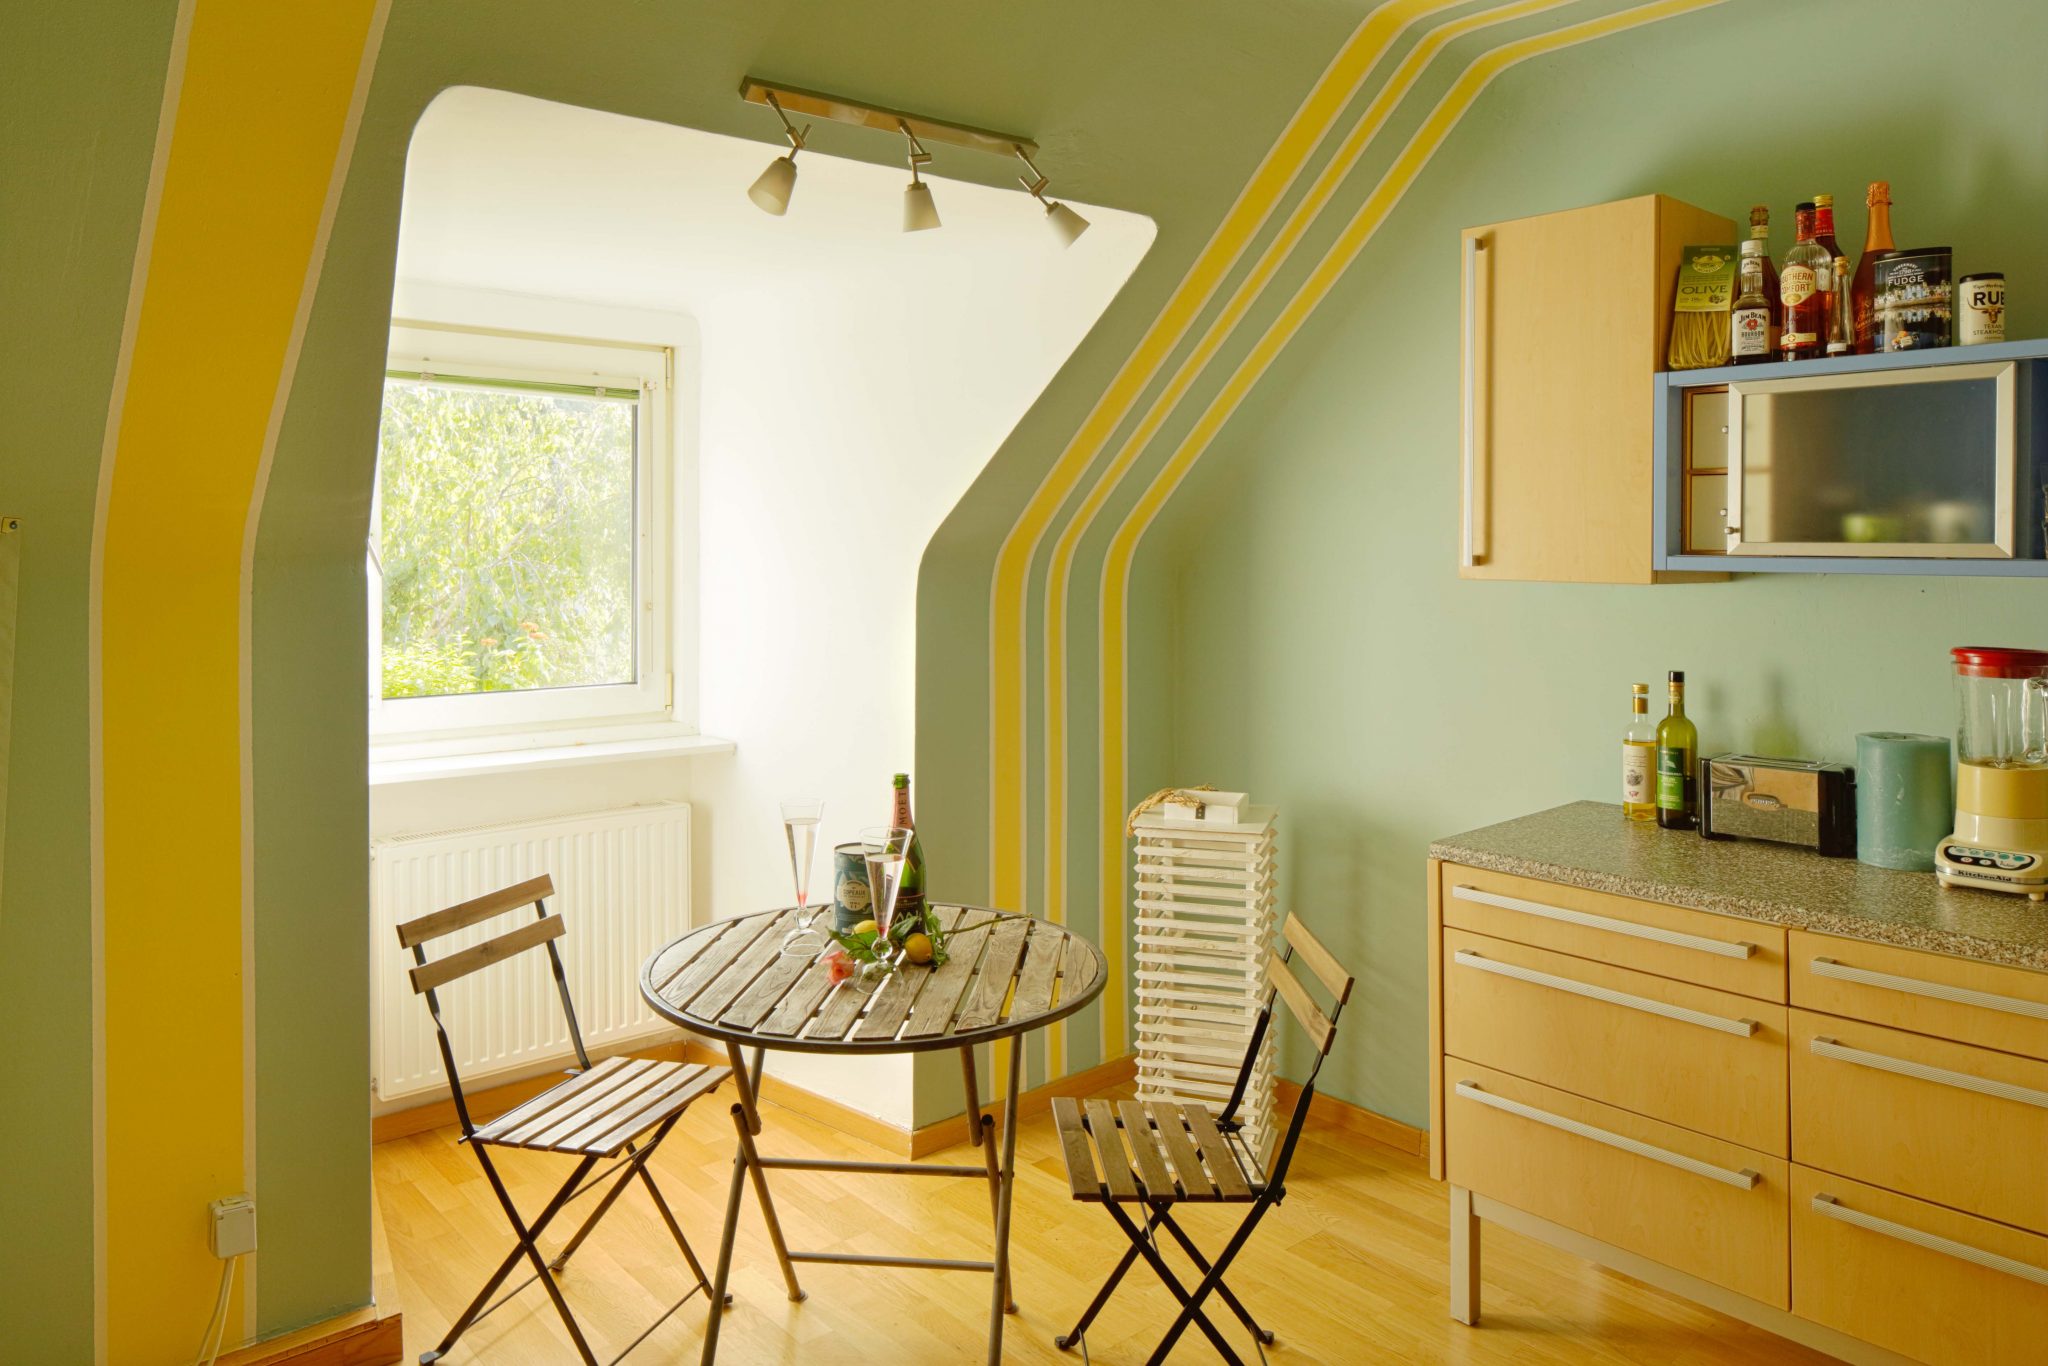 Mittels mit Streifen bestrichenen Wänden inszenierte Dachschräge in Gelb und Hellgrün, kleiner runder Tisch mit zwei kleinen Stühlen als Interior.